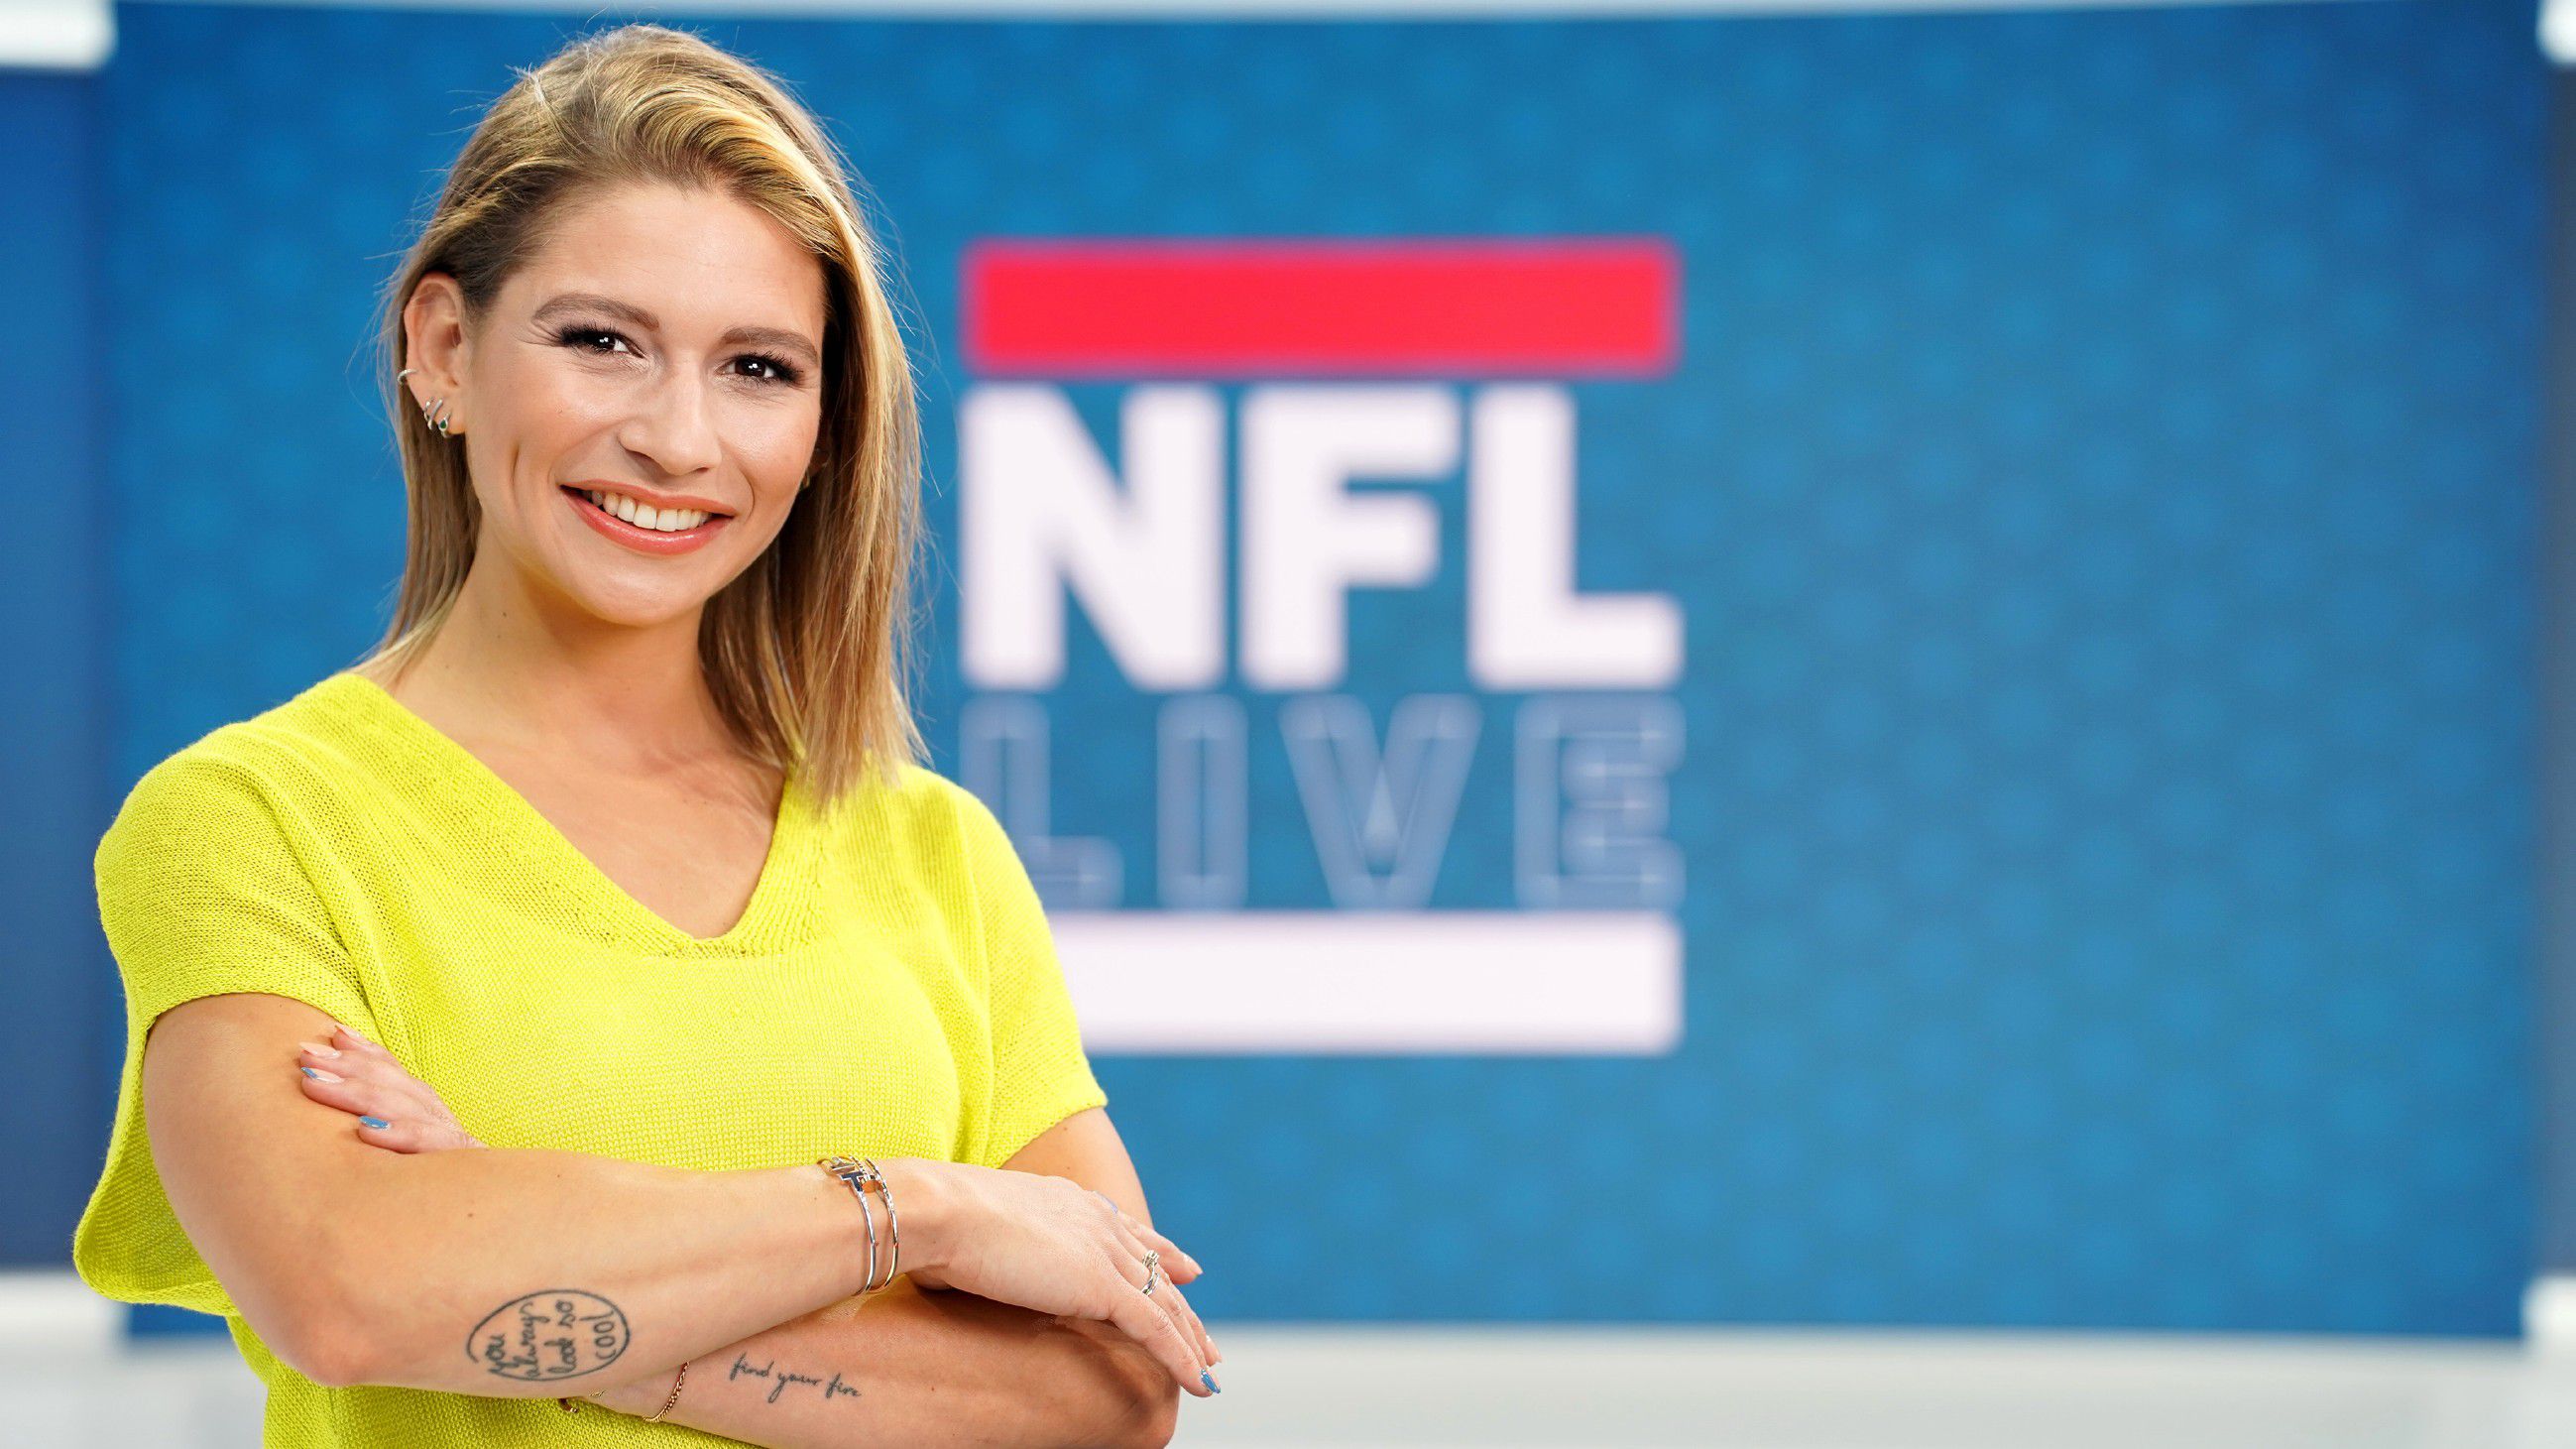 NFL bei RTL TV-Einschaltquoten zum Saisonstart enttäuschend Sports Illustrated